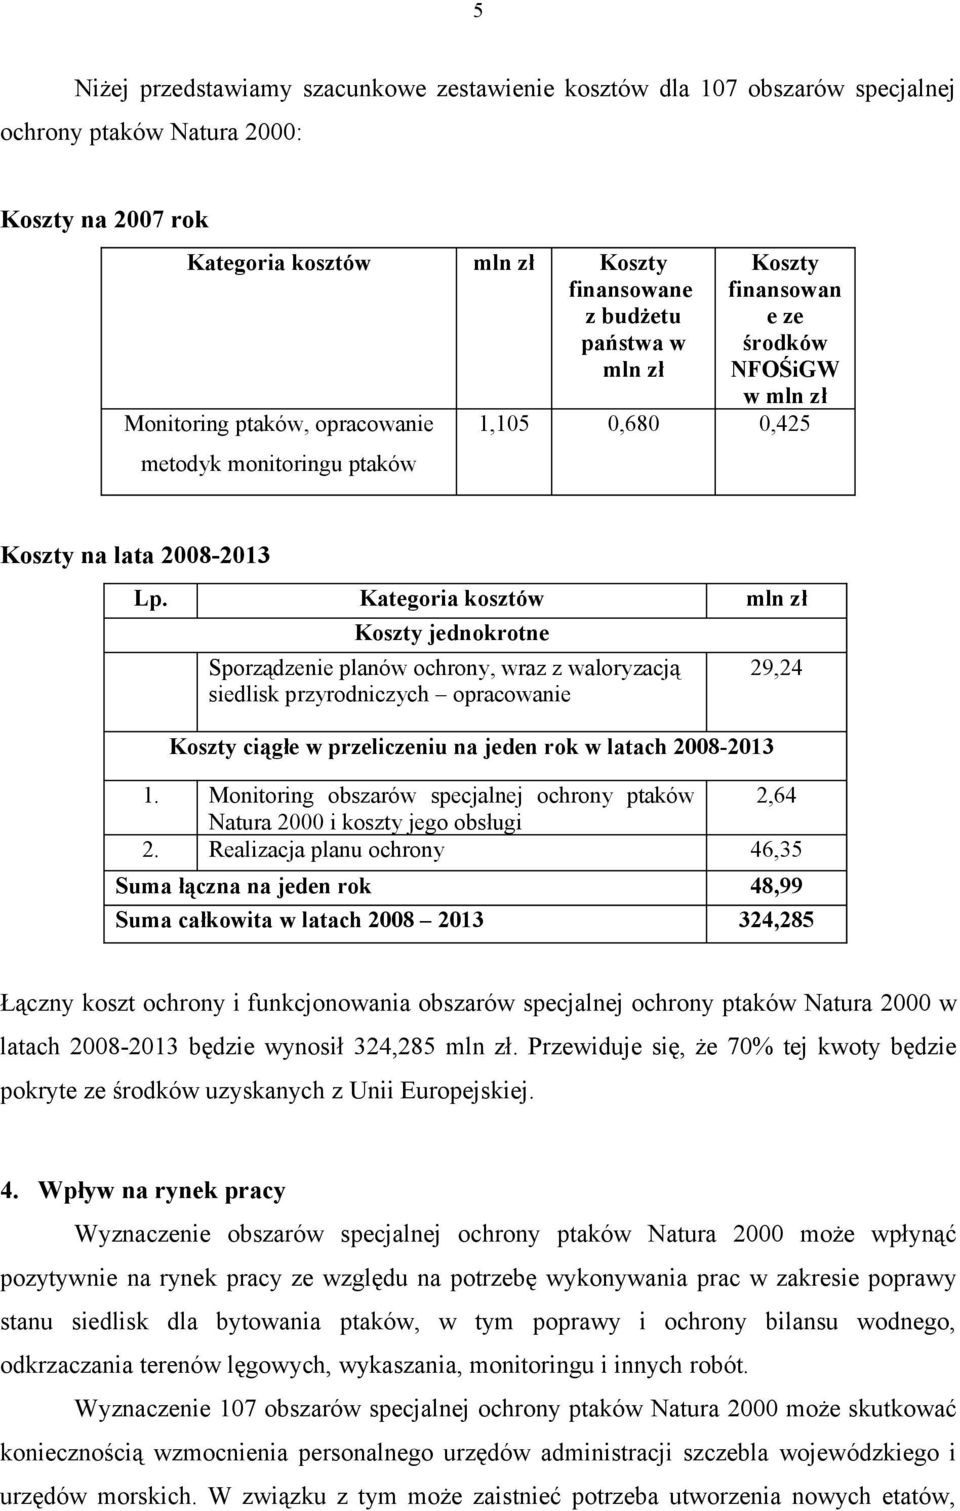 Kategoria kosztów mln zł Koszty jednokrotne Sporządzenie planów ochrony, wraz z waloryzacją siedlisk przyrodniczych opracowanie Koszty ciągłe w przeliczeniu na jeden rok w latach 2008-2013 29,24 1.